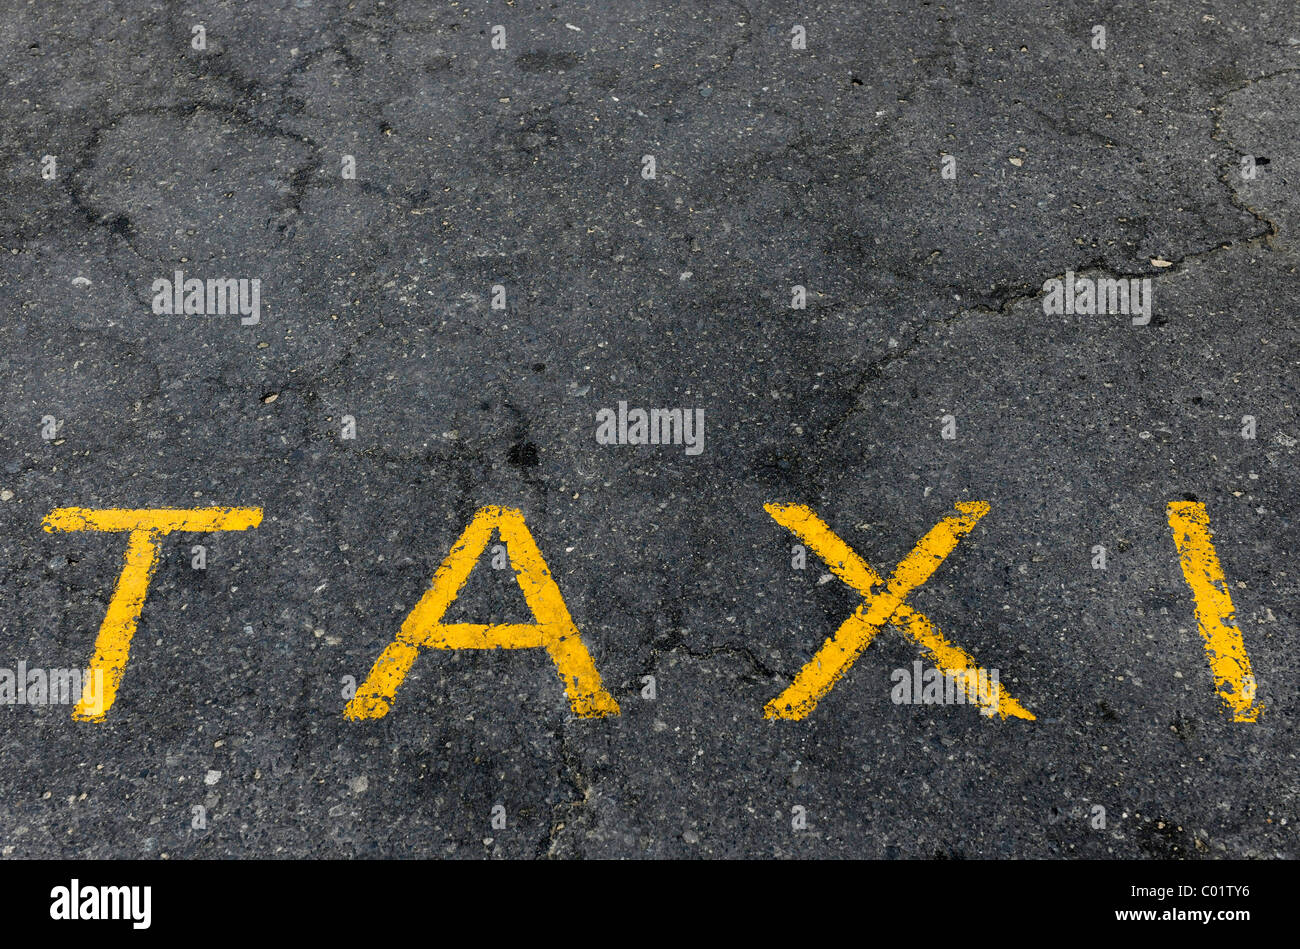 Word 'taxi' on the asphalt Stock Photo